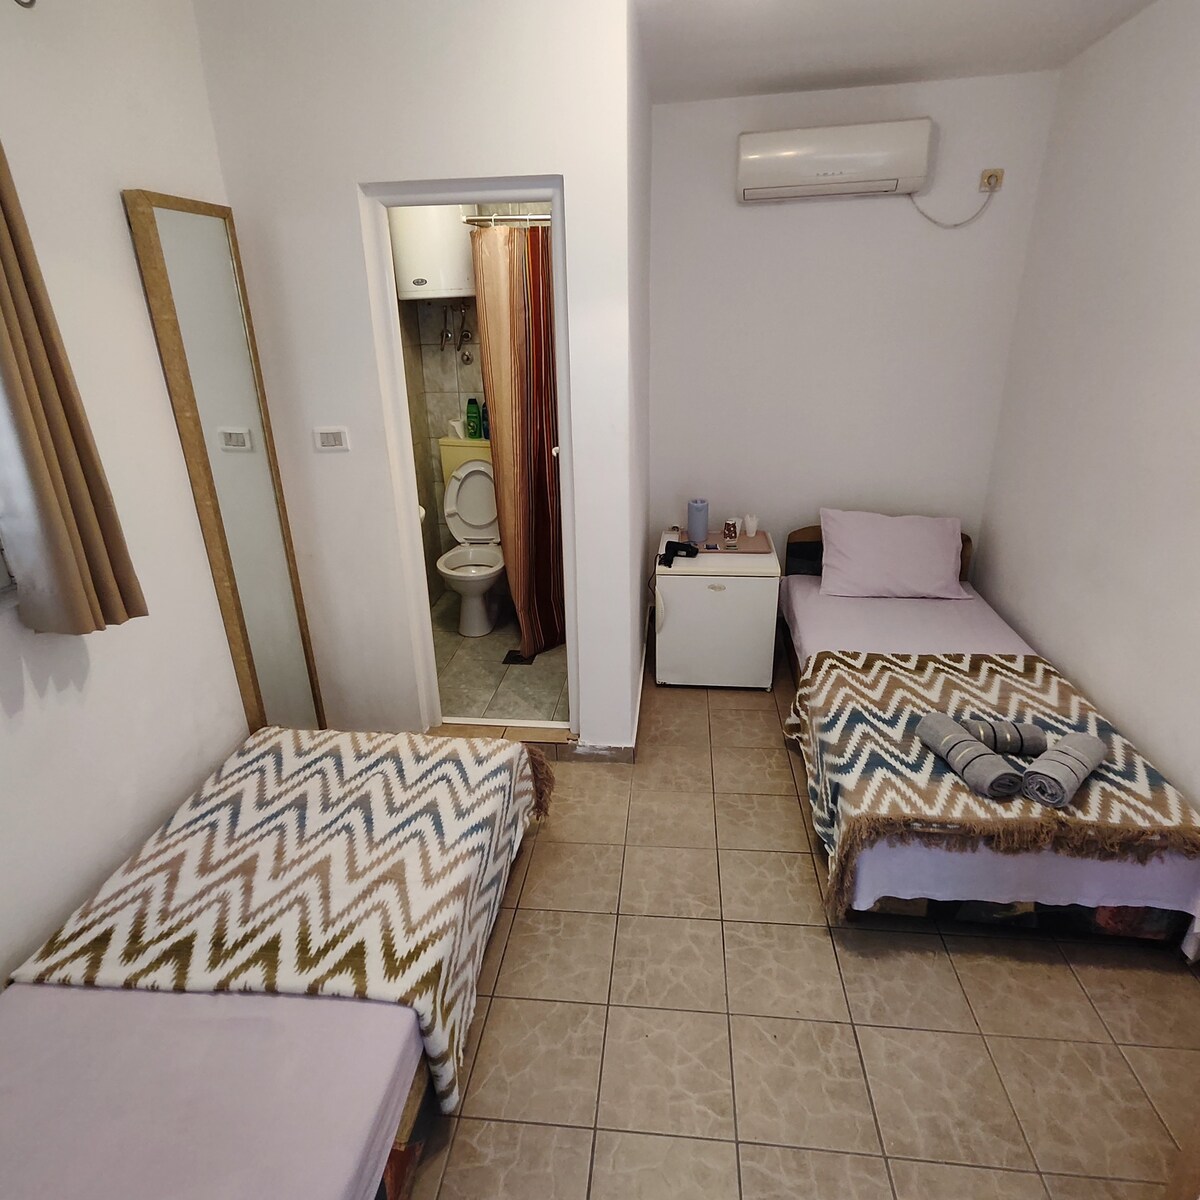 经济型公寓带2张单人床和卫生间